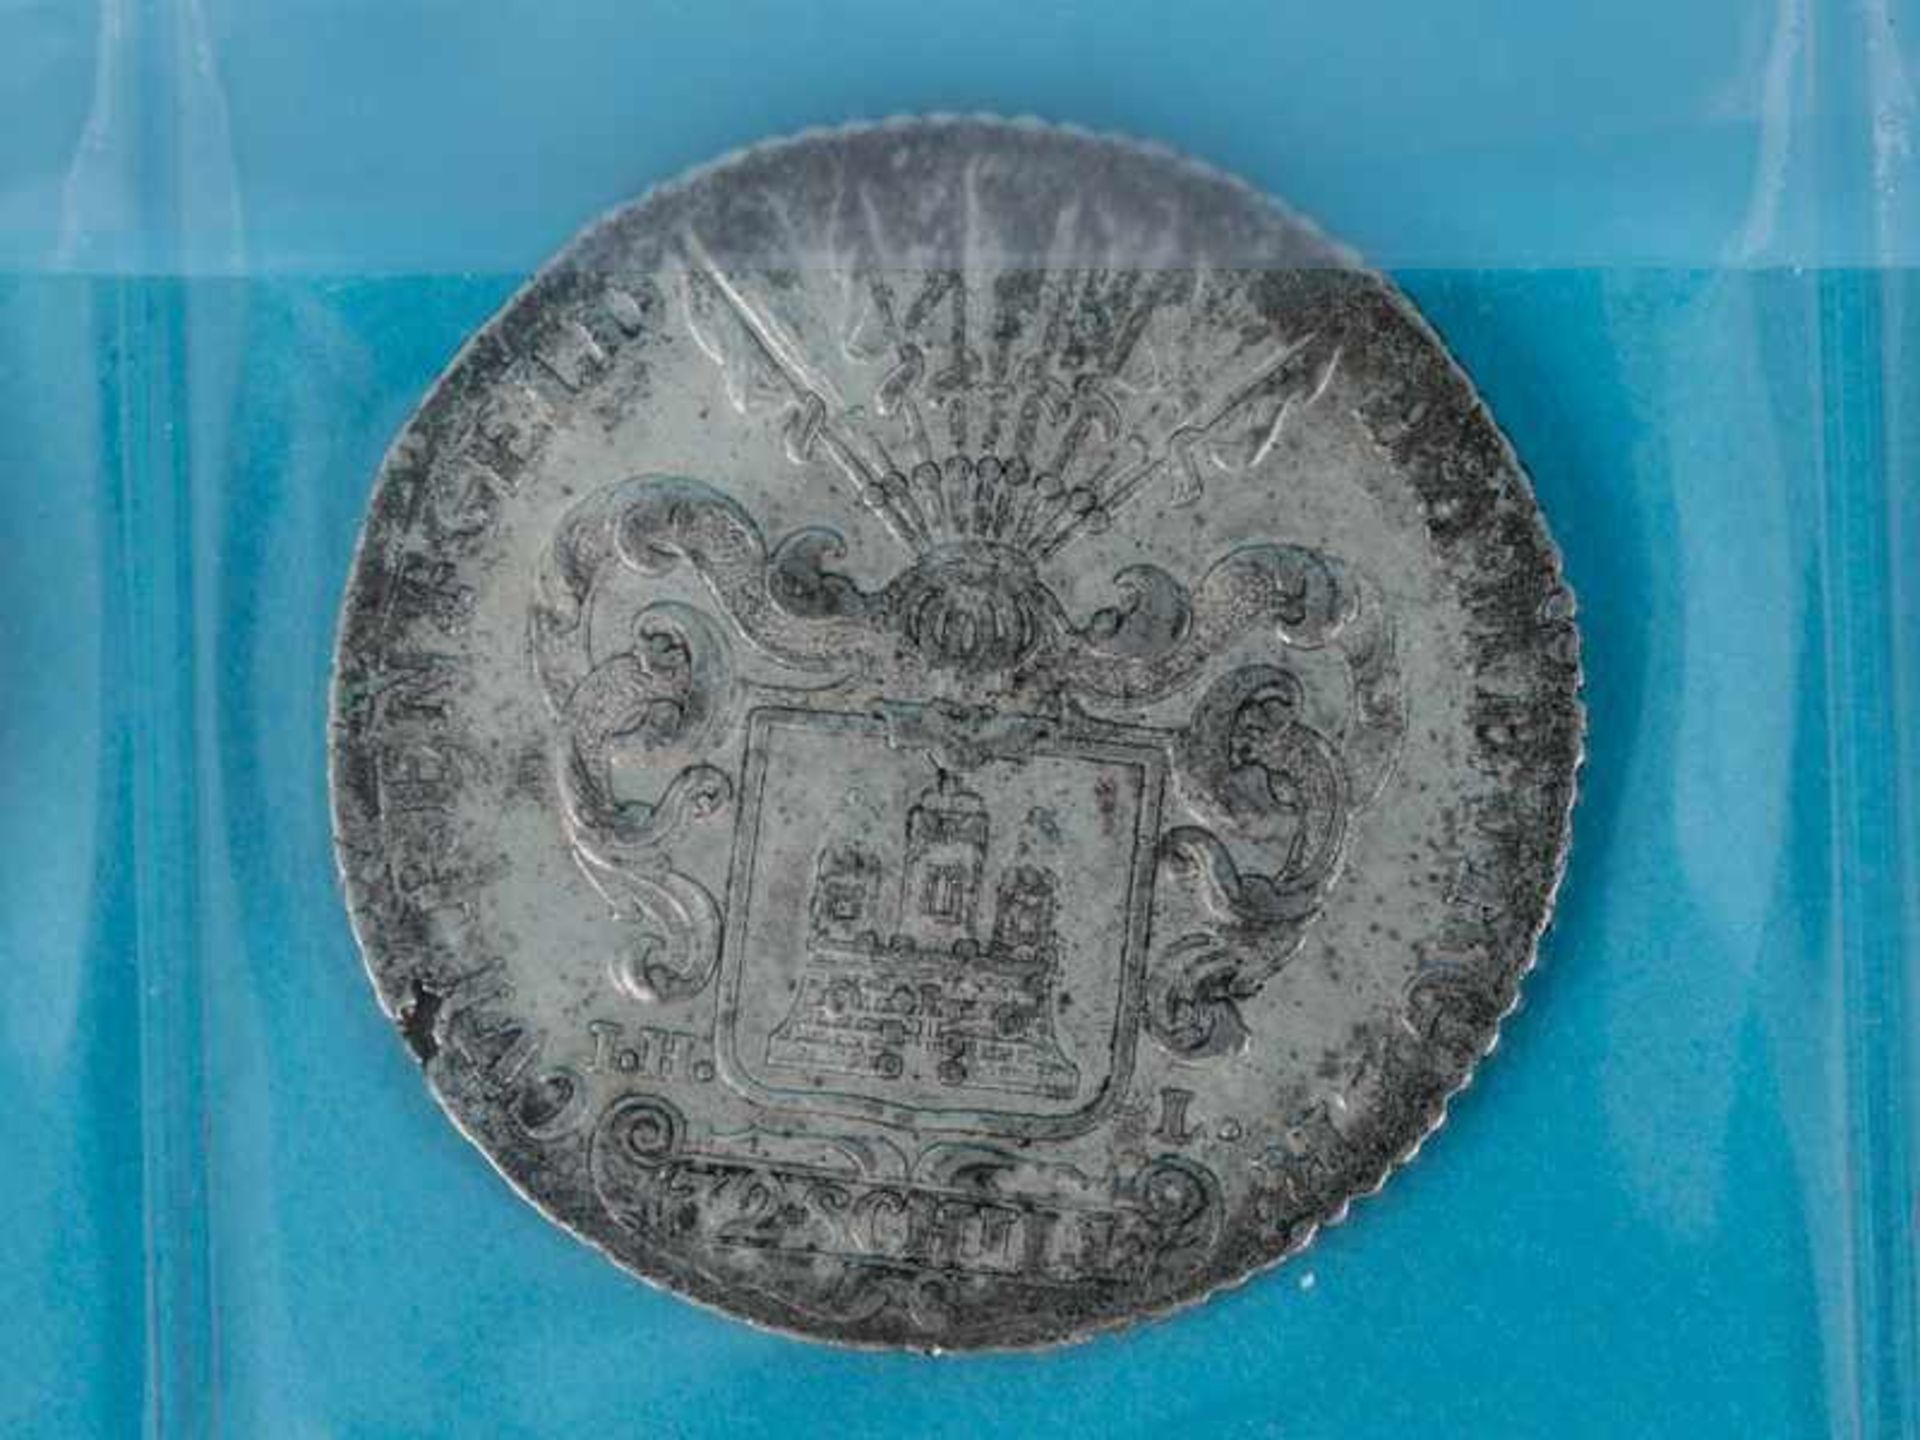 Großes Münz-Konvolut, überwiegend Deutschland, teils China, 17. - 20. Jh. Silber, Kupfer + versch. - Bild 16 aus 49